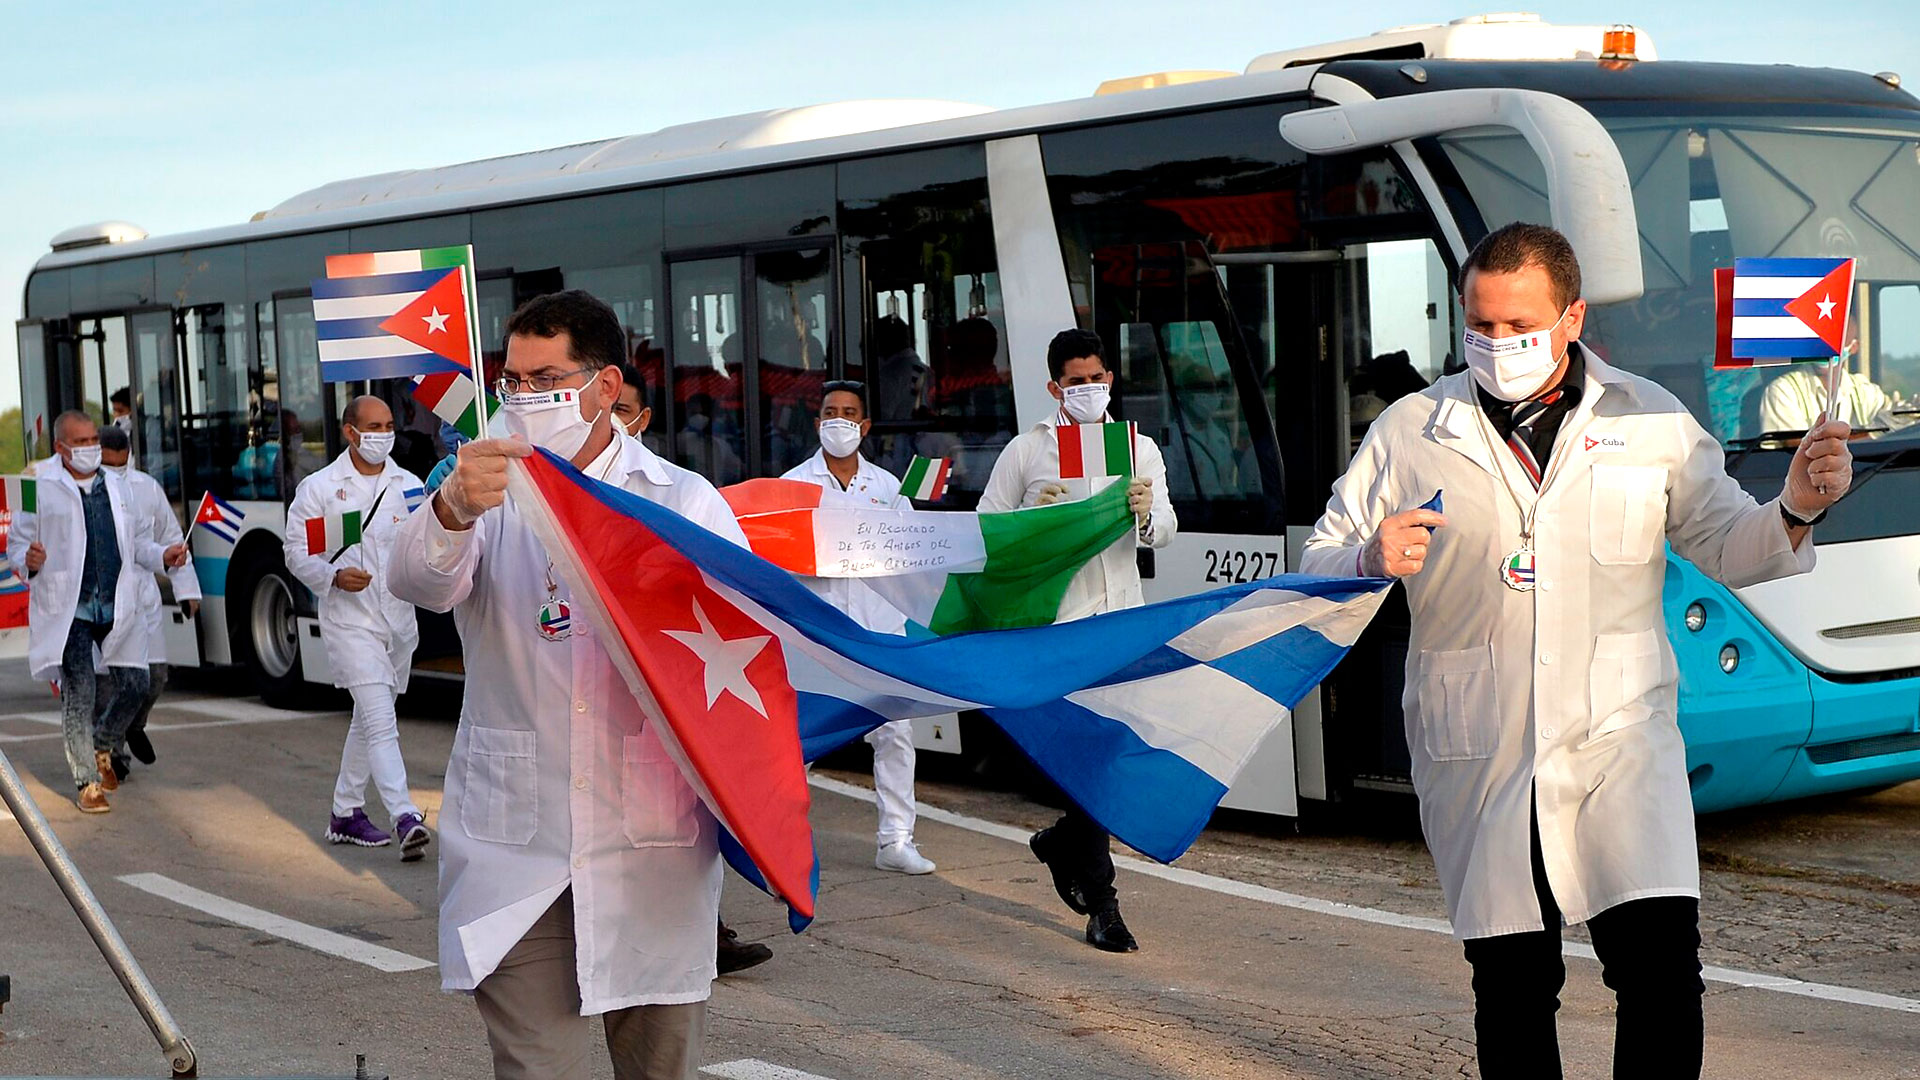 Médicos cubanos ondeaban banderas de Cuba e Italia el año pasado, cuando regresaron a casa después de una misión para ayudar a combatir el coronavirus en Italia. (Foto de consorcio de Yamil Lage)